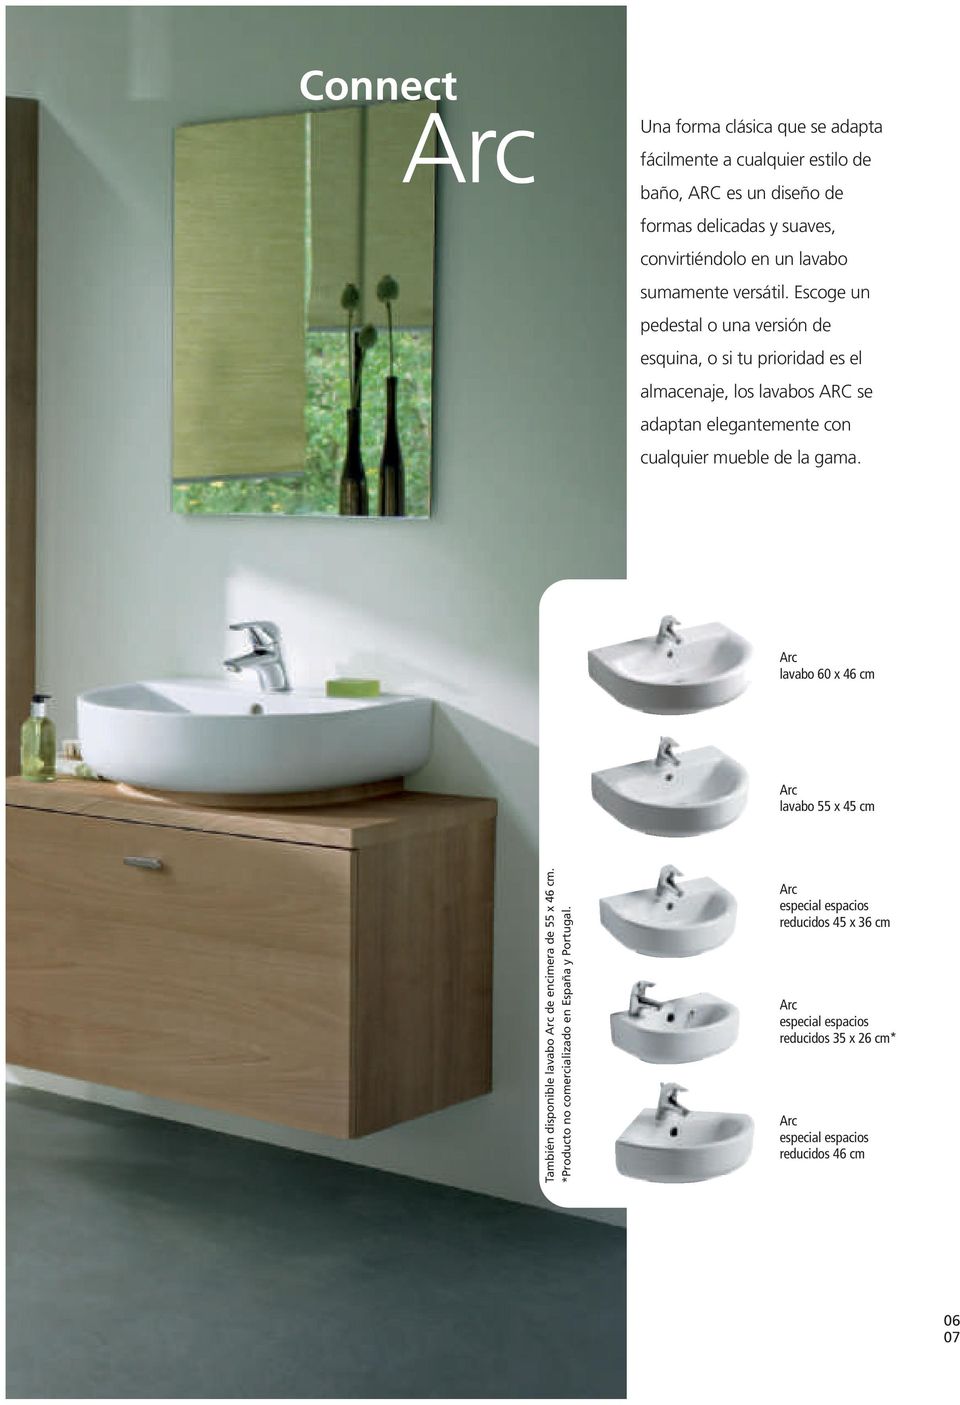 Escoge un pedestal o una versión de esquina, o si tu prioridad es el almacenaje, los lavabos ARC se adaptan elegantemente con cualquier mueble de la gama.